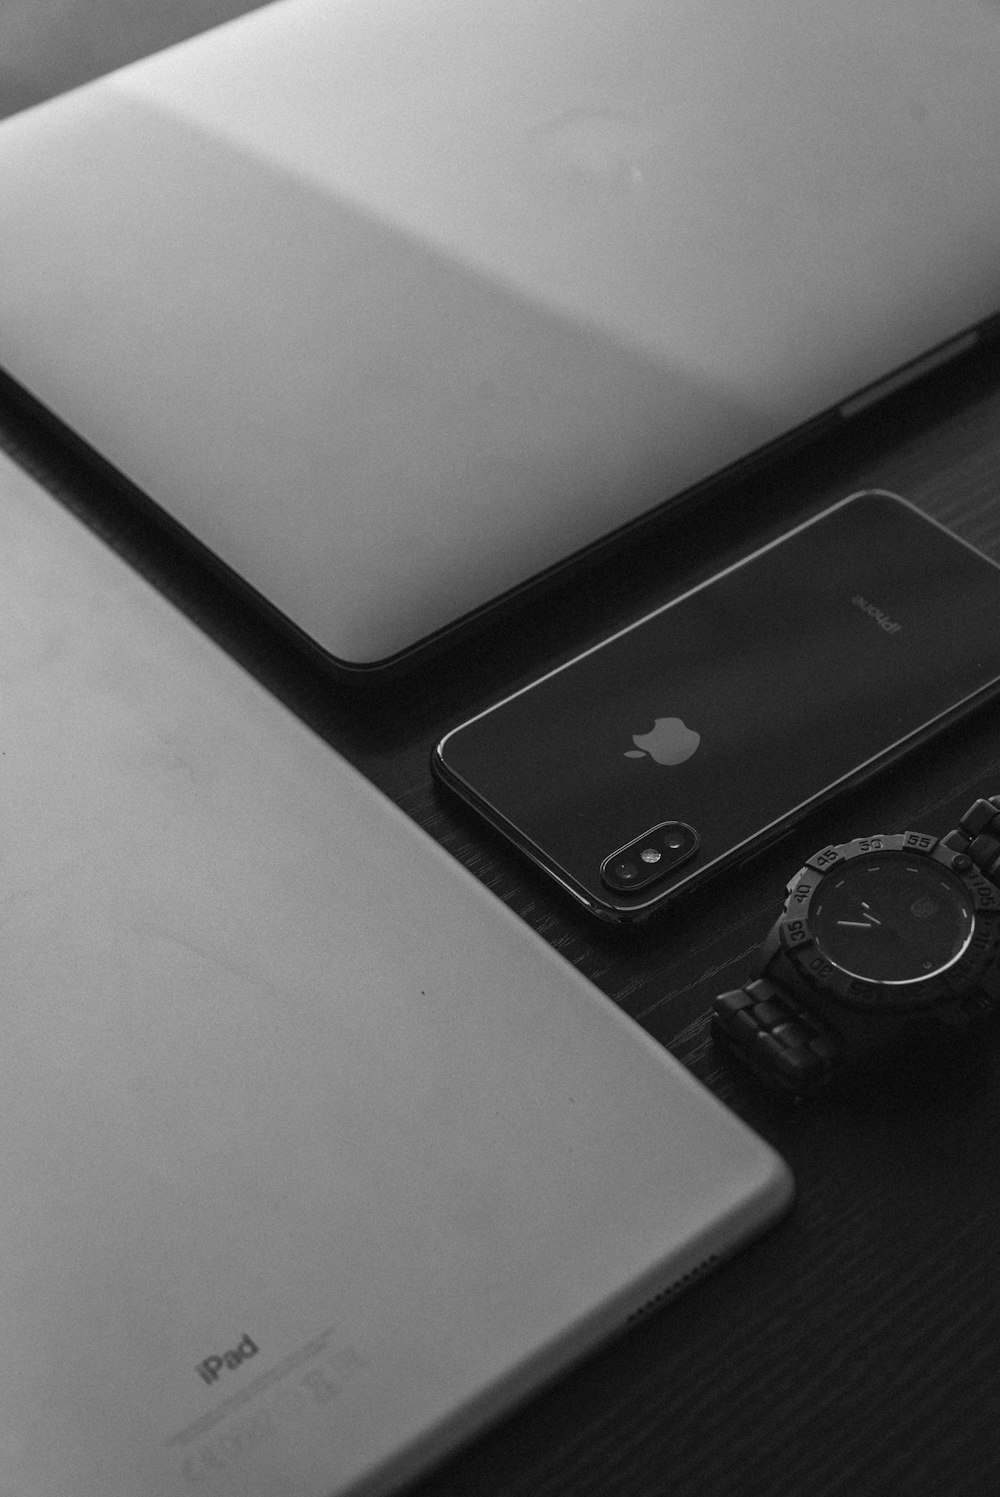 Apple MacBook plateado, iPad plateado, iPhone X gris espacial y reloj analógico negro